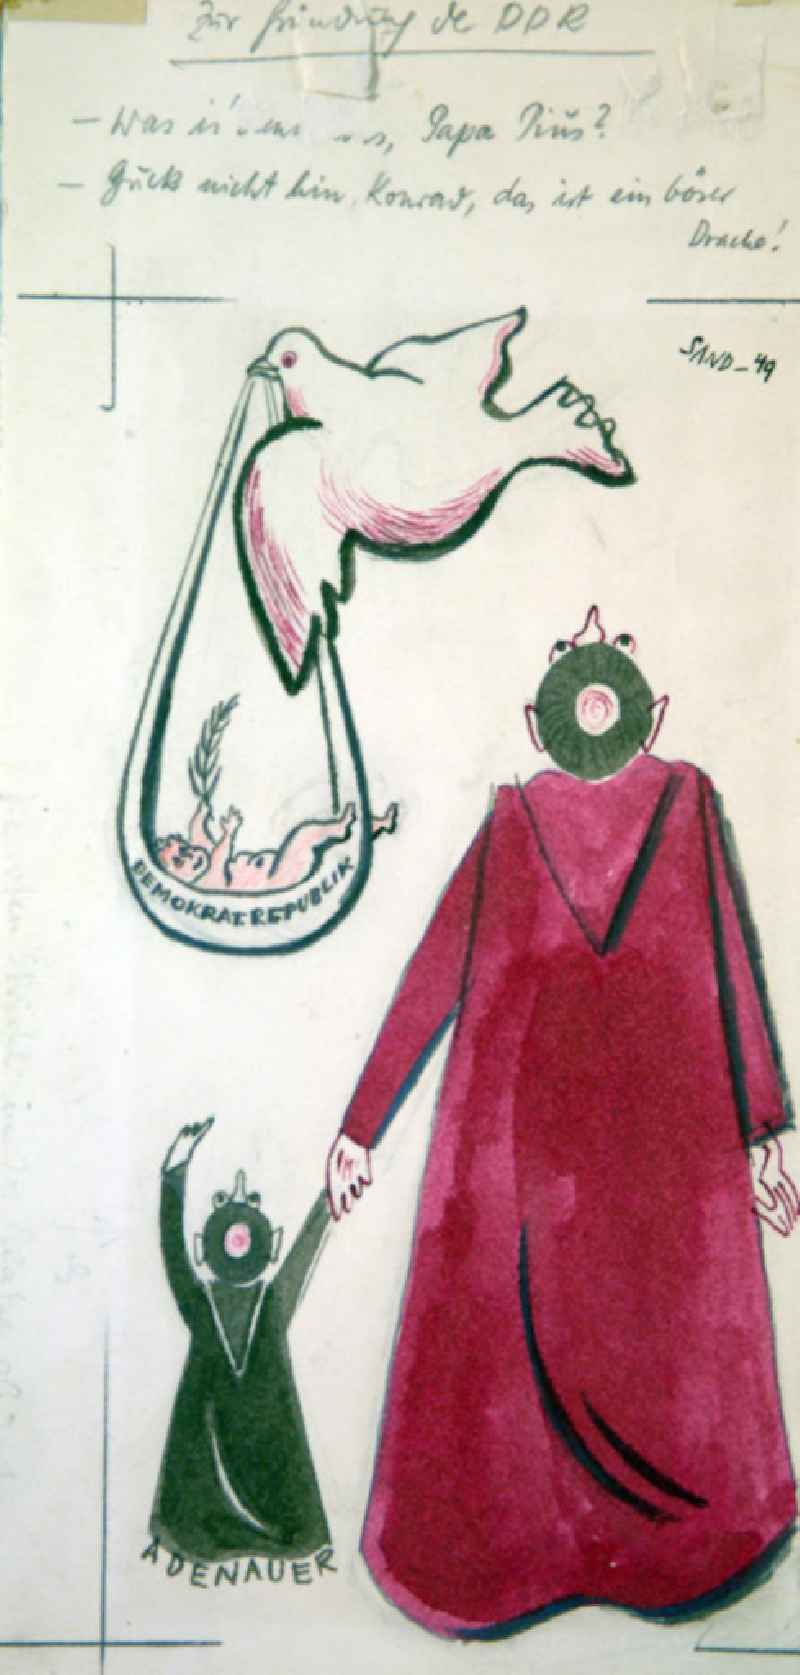 Zeichnung von Herbert Sandberg 'Zur Gründung der DDR' aus dem Jahr 1949, 14,6x31,